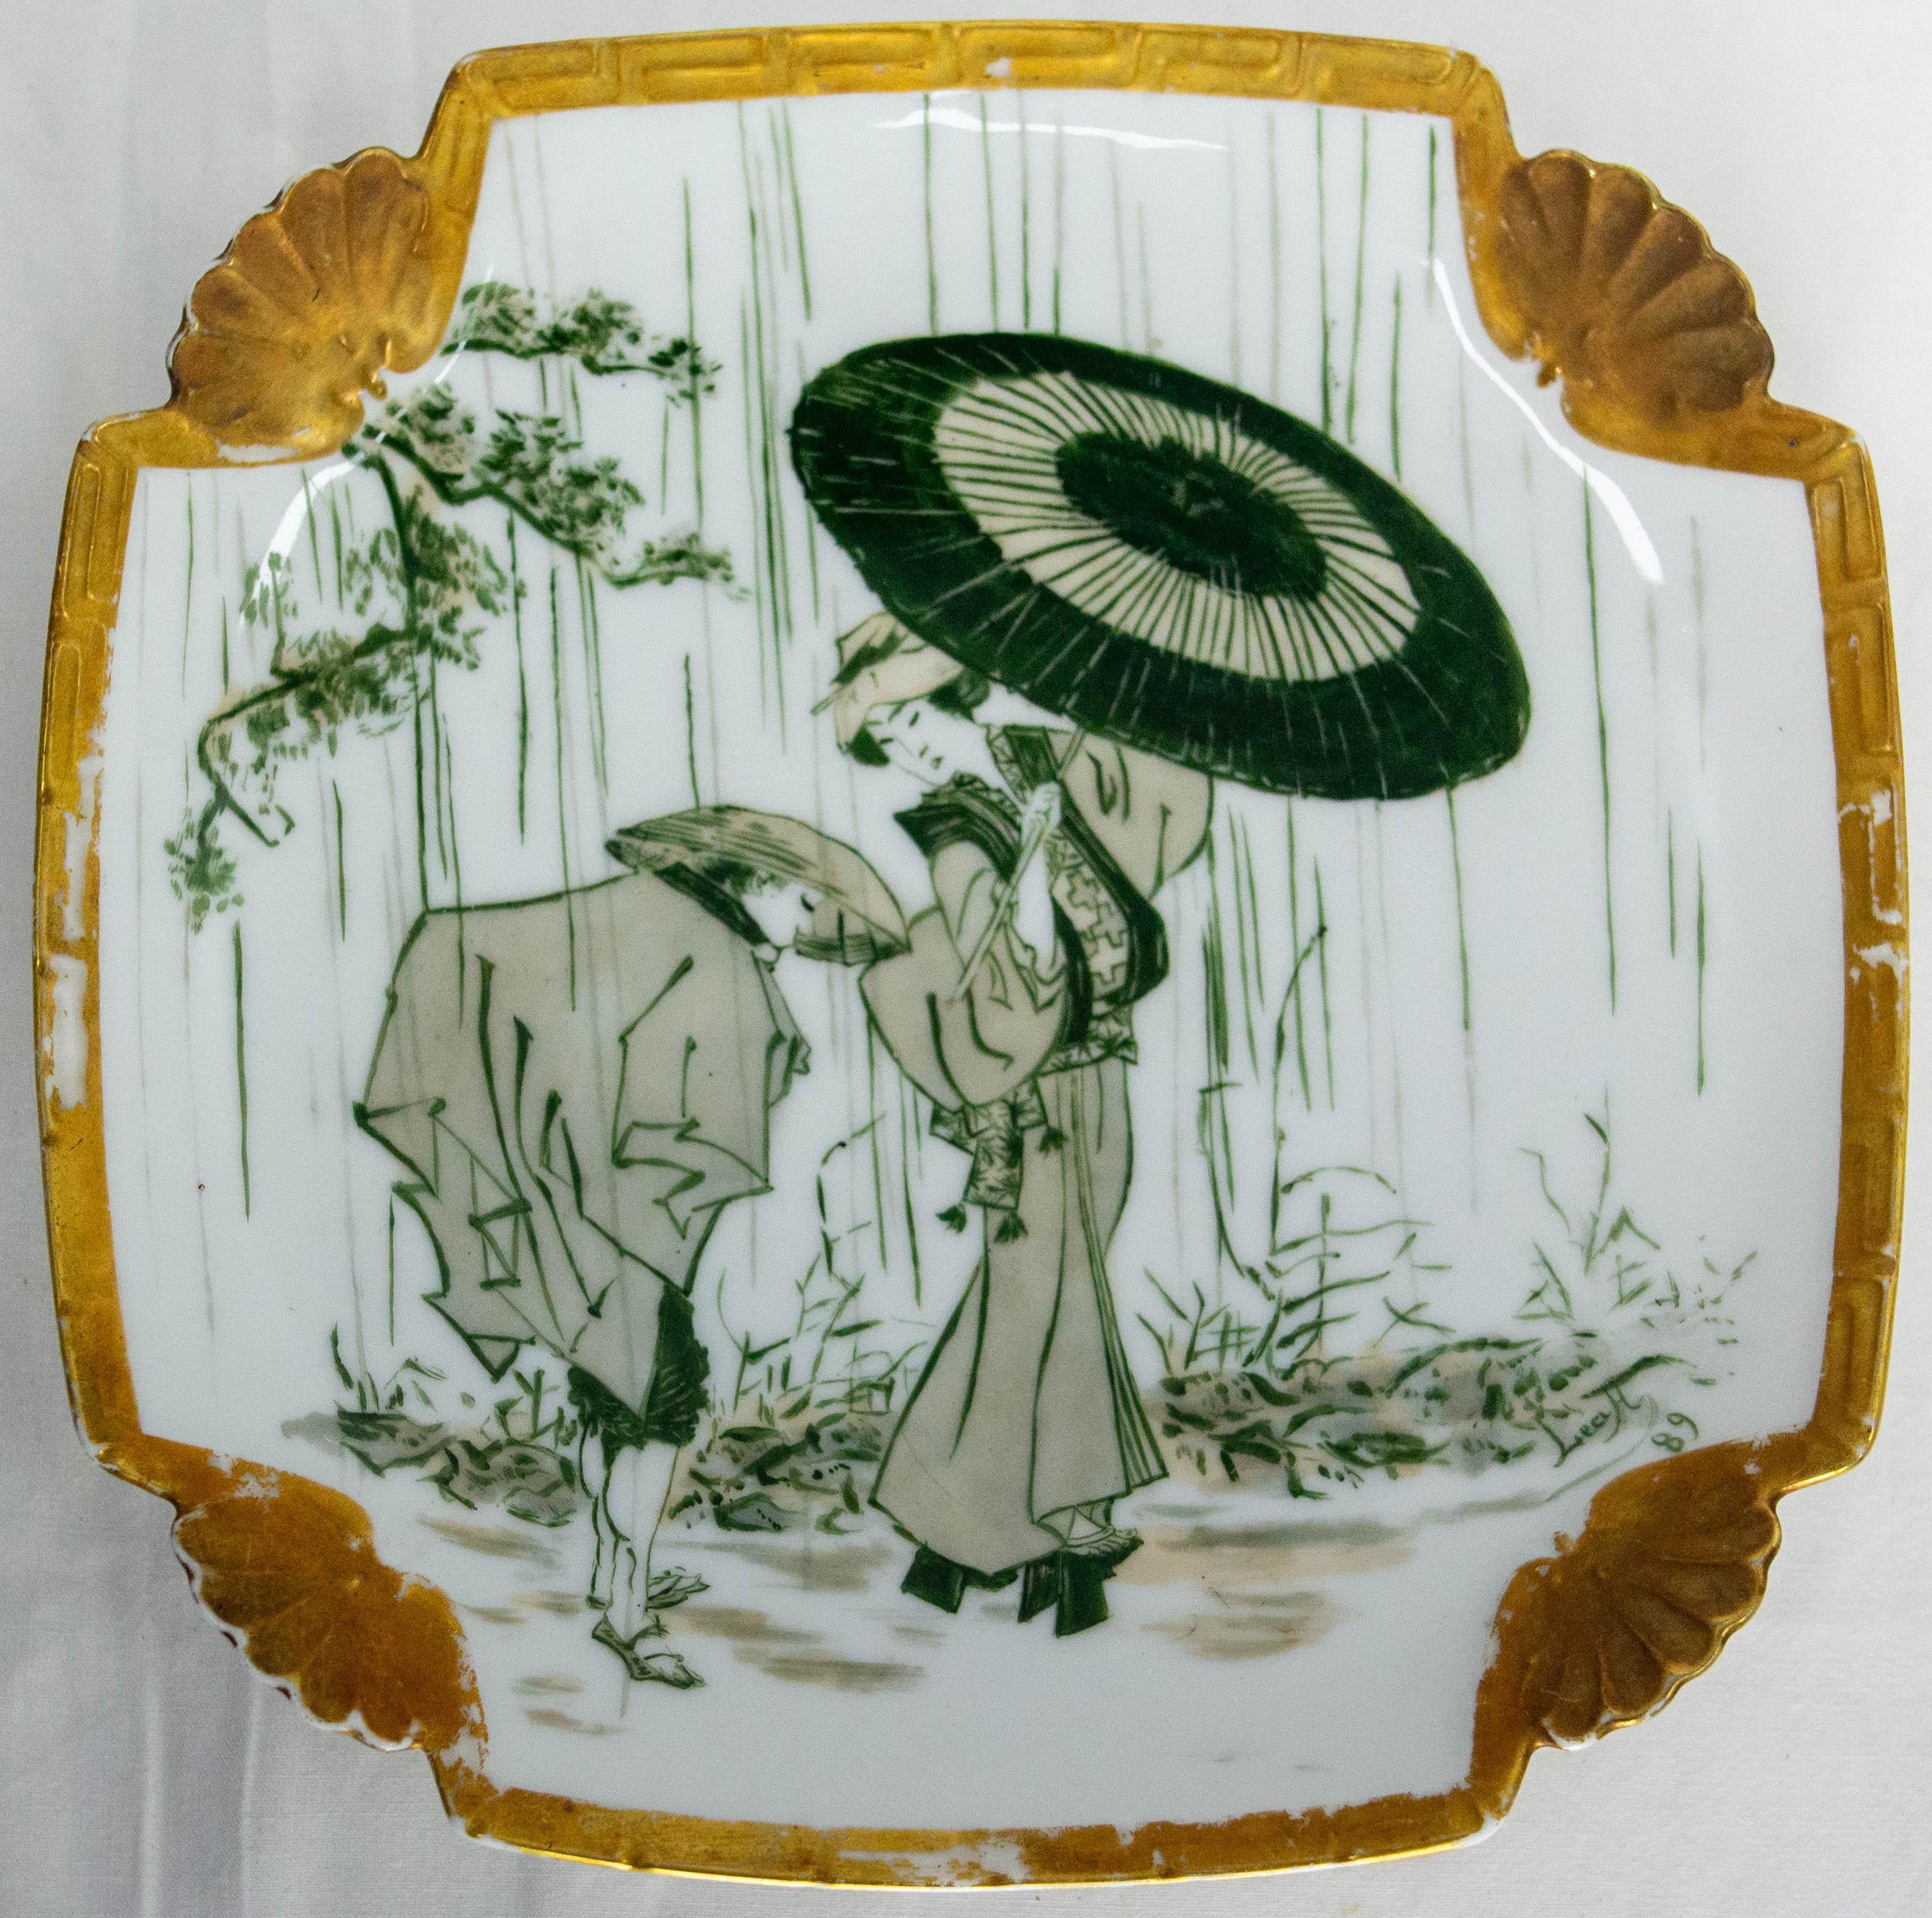 Ein quadratischer Teller im japanischen Stil, der typisch ist für die Verliebtheit Europas in östliche Kulturen im 19.
Keramik mit einer Geisha, die im Regen einen Regenschirm trägt, und blühenden Kirschzweigen.
Hergestellt um das 19.